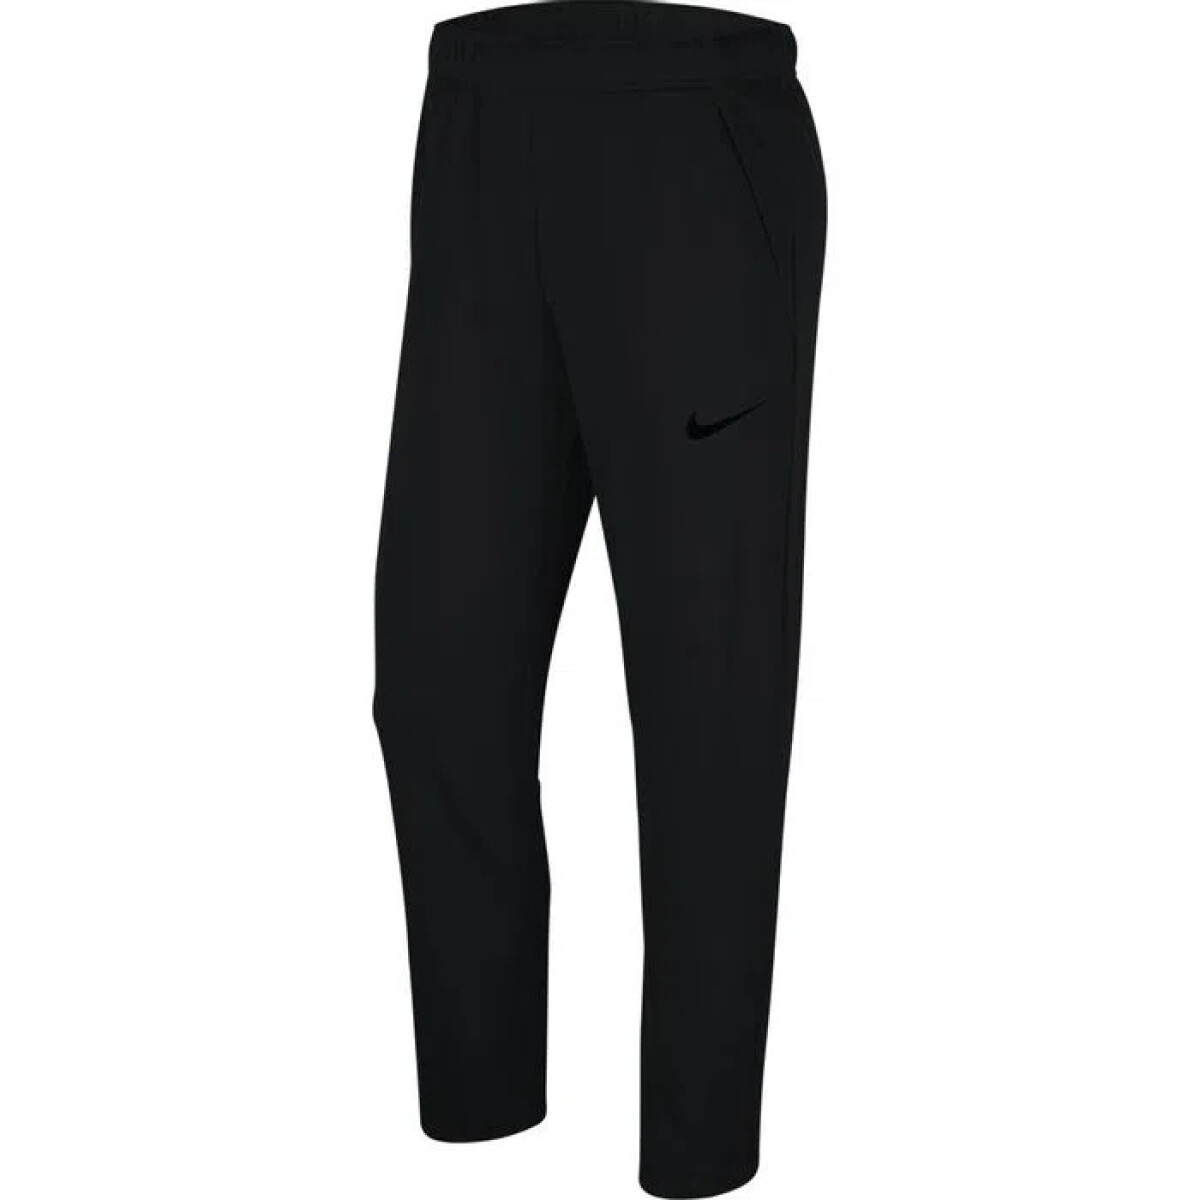 Pantalon Nike Training Hombre Epic - S/C 